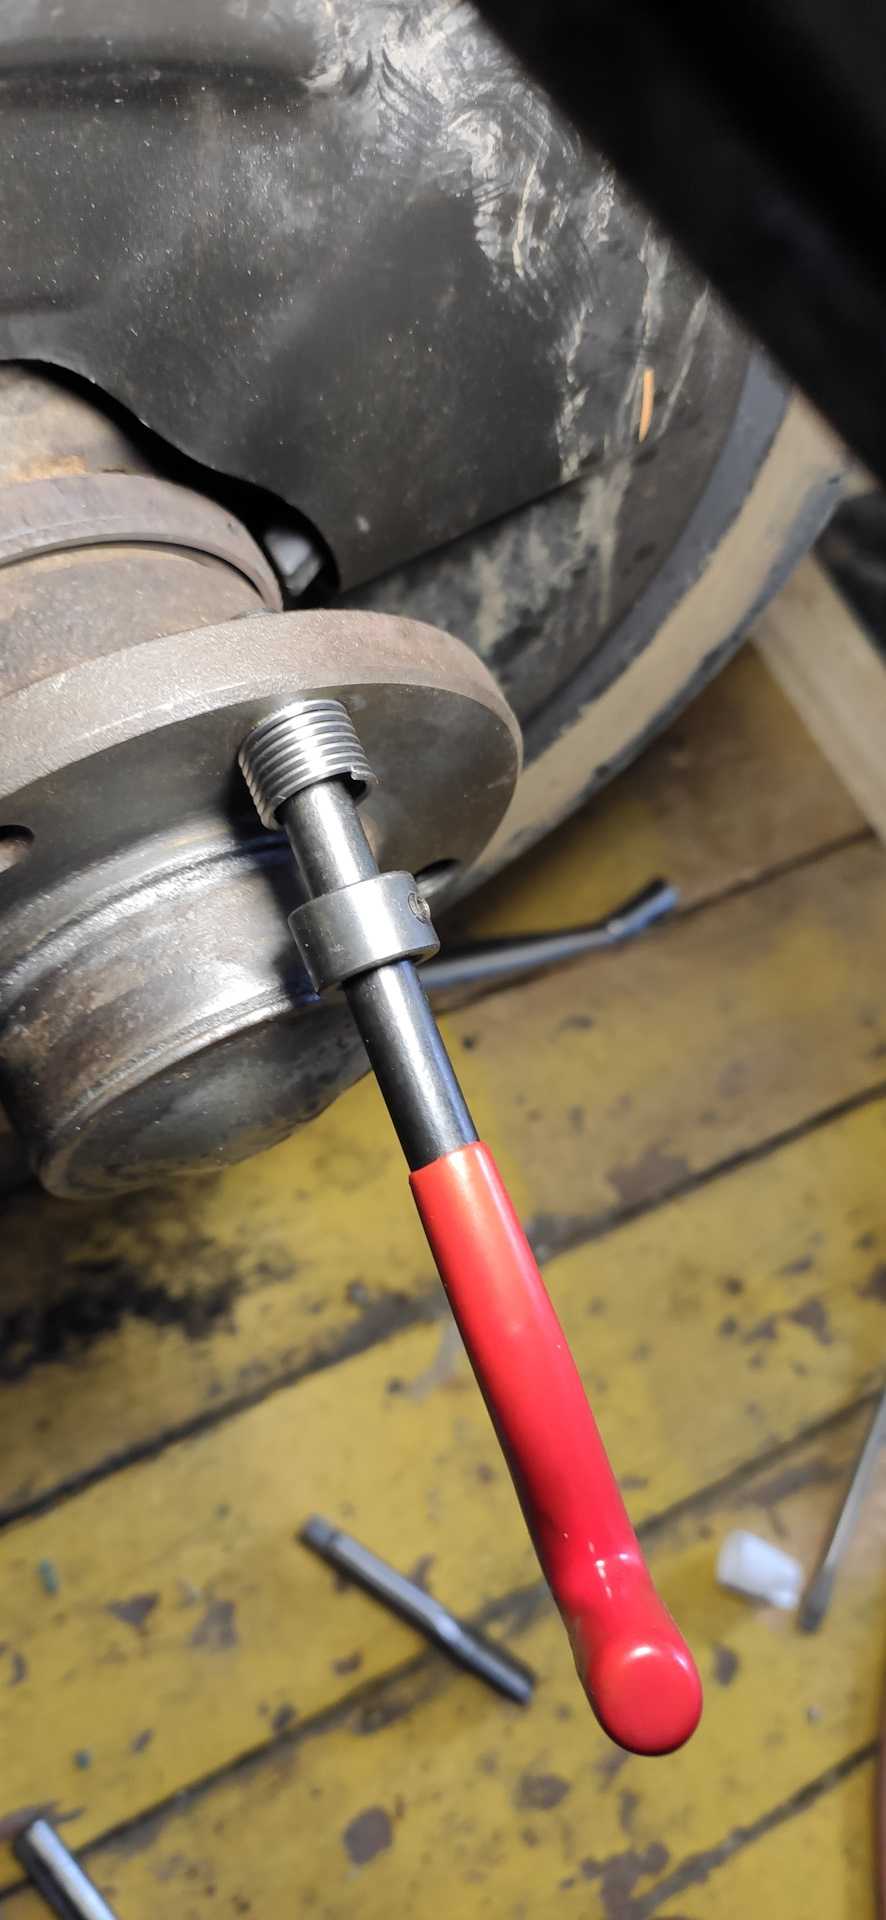 Курсовая работа: восстановление ступицы переднего колеса автомобиля зил-130